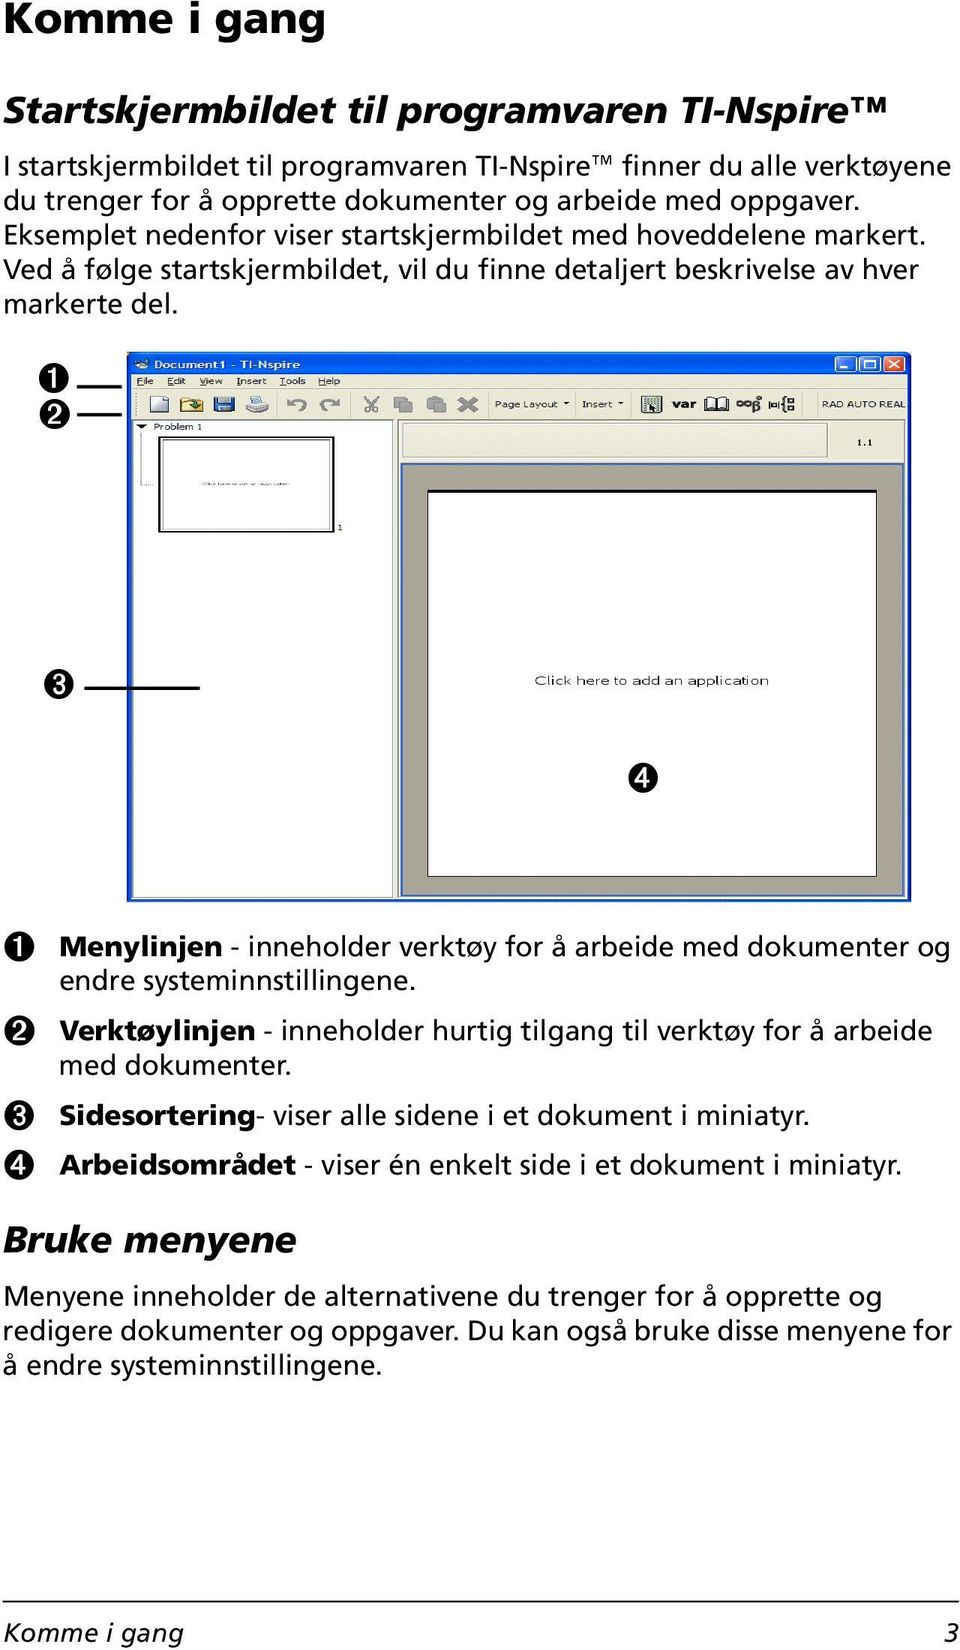 À Á Â Ã À Menylinjen - inneholder verktøy for å arbeide med dokumenter og endre systeminnstillingene. Á Verktøylinjen - inneholder hurtig tilgang til verktøy for å arbeide med dokumenter.